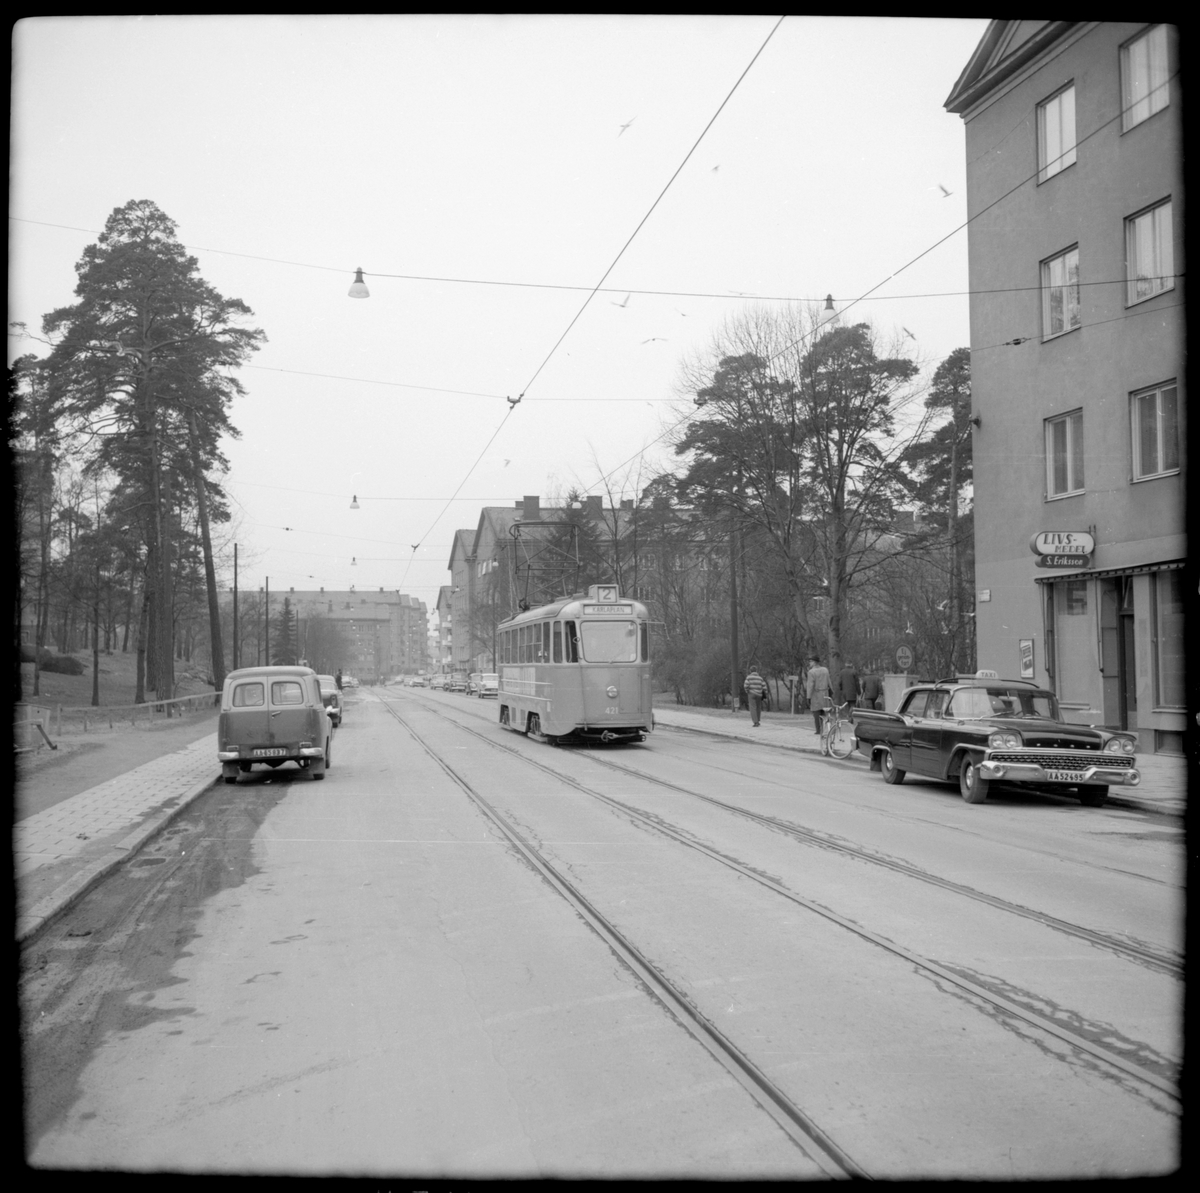 Aktiebolaget Stockholms Spårvägar, SS A25 421 "mustang" linje 2 Fredhäll - Karlaplan i Rålambsvägen på väg mot centrum.